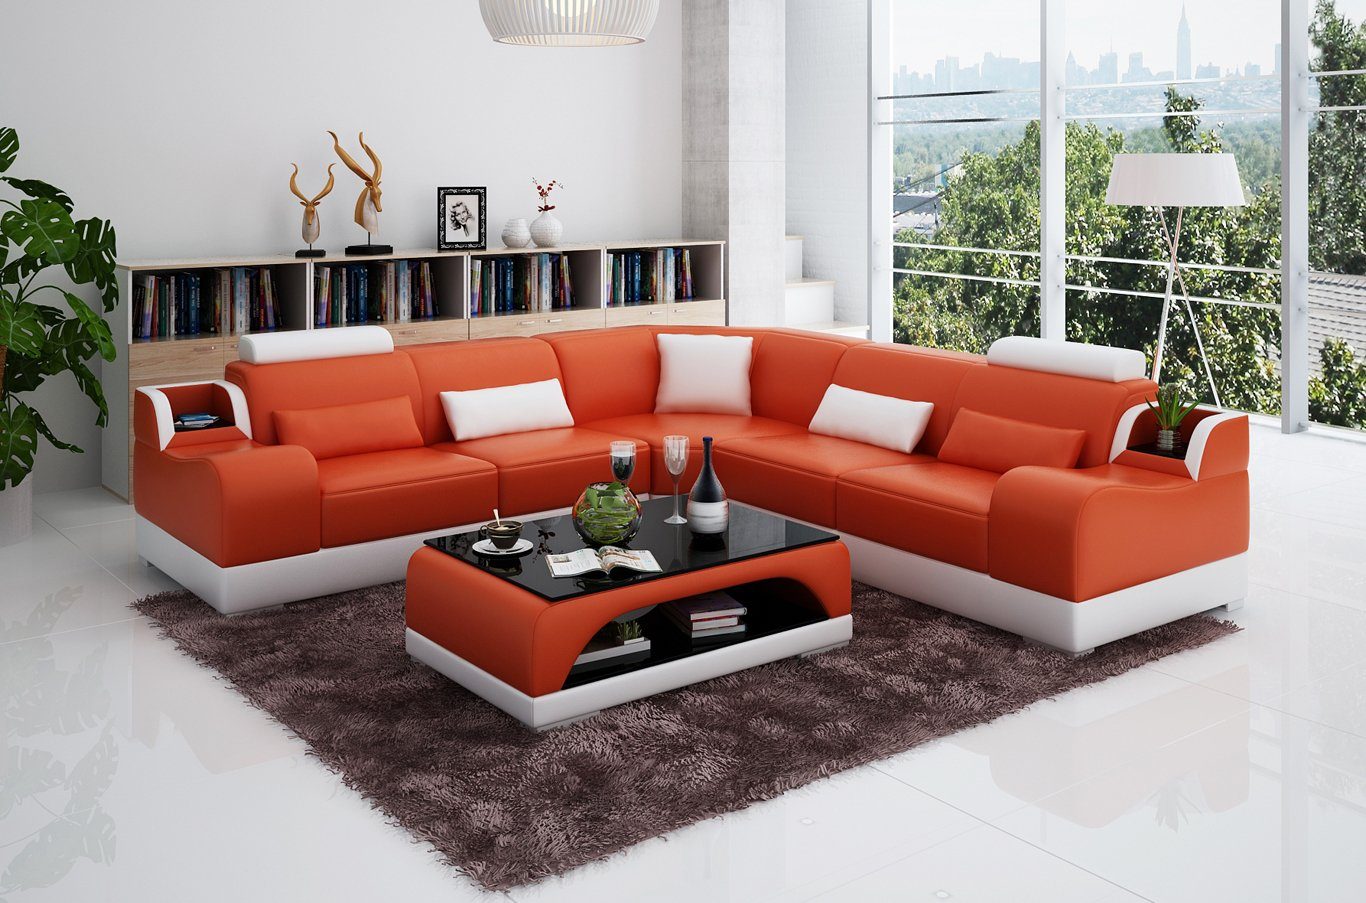 JVmoebel Ecksofa Ecksofa Couch Polster Wohnlandschaft Eck Garnitur Ecke Leder Sofa, Made in Europe Orange/Weiß